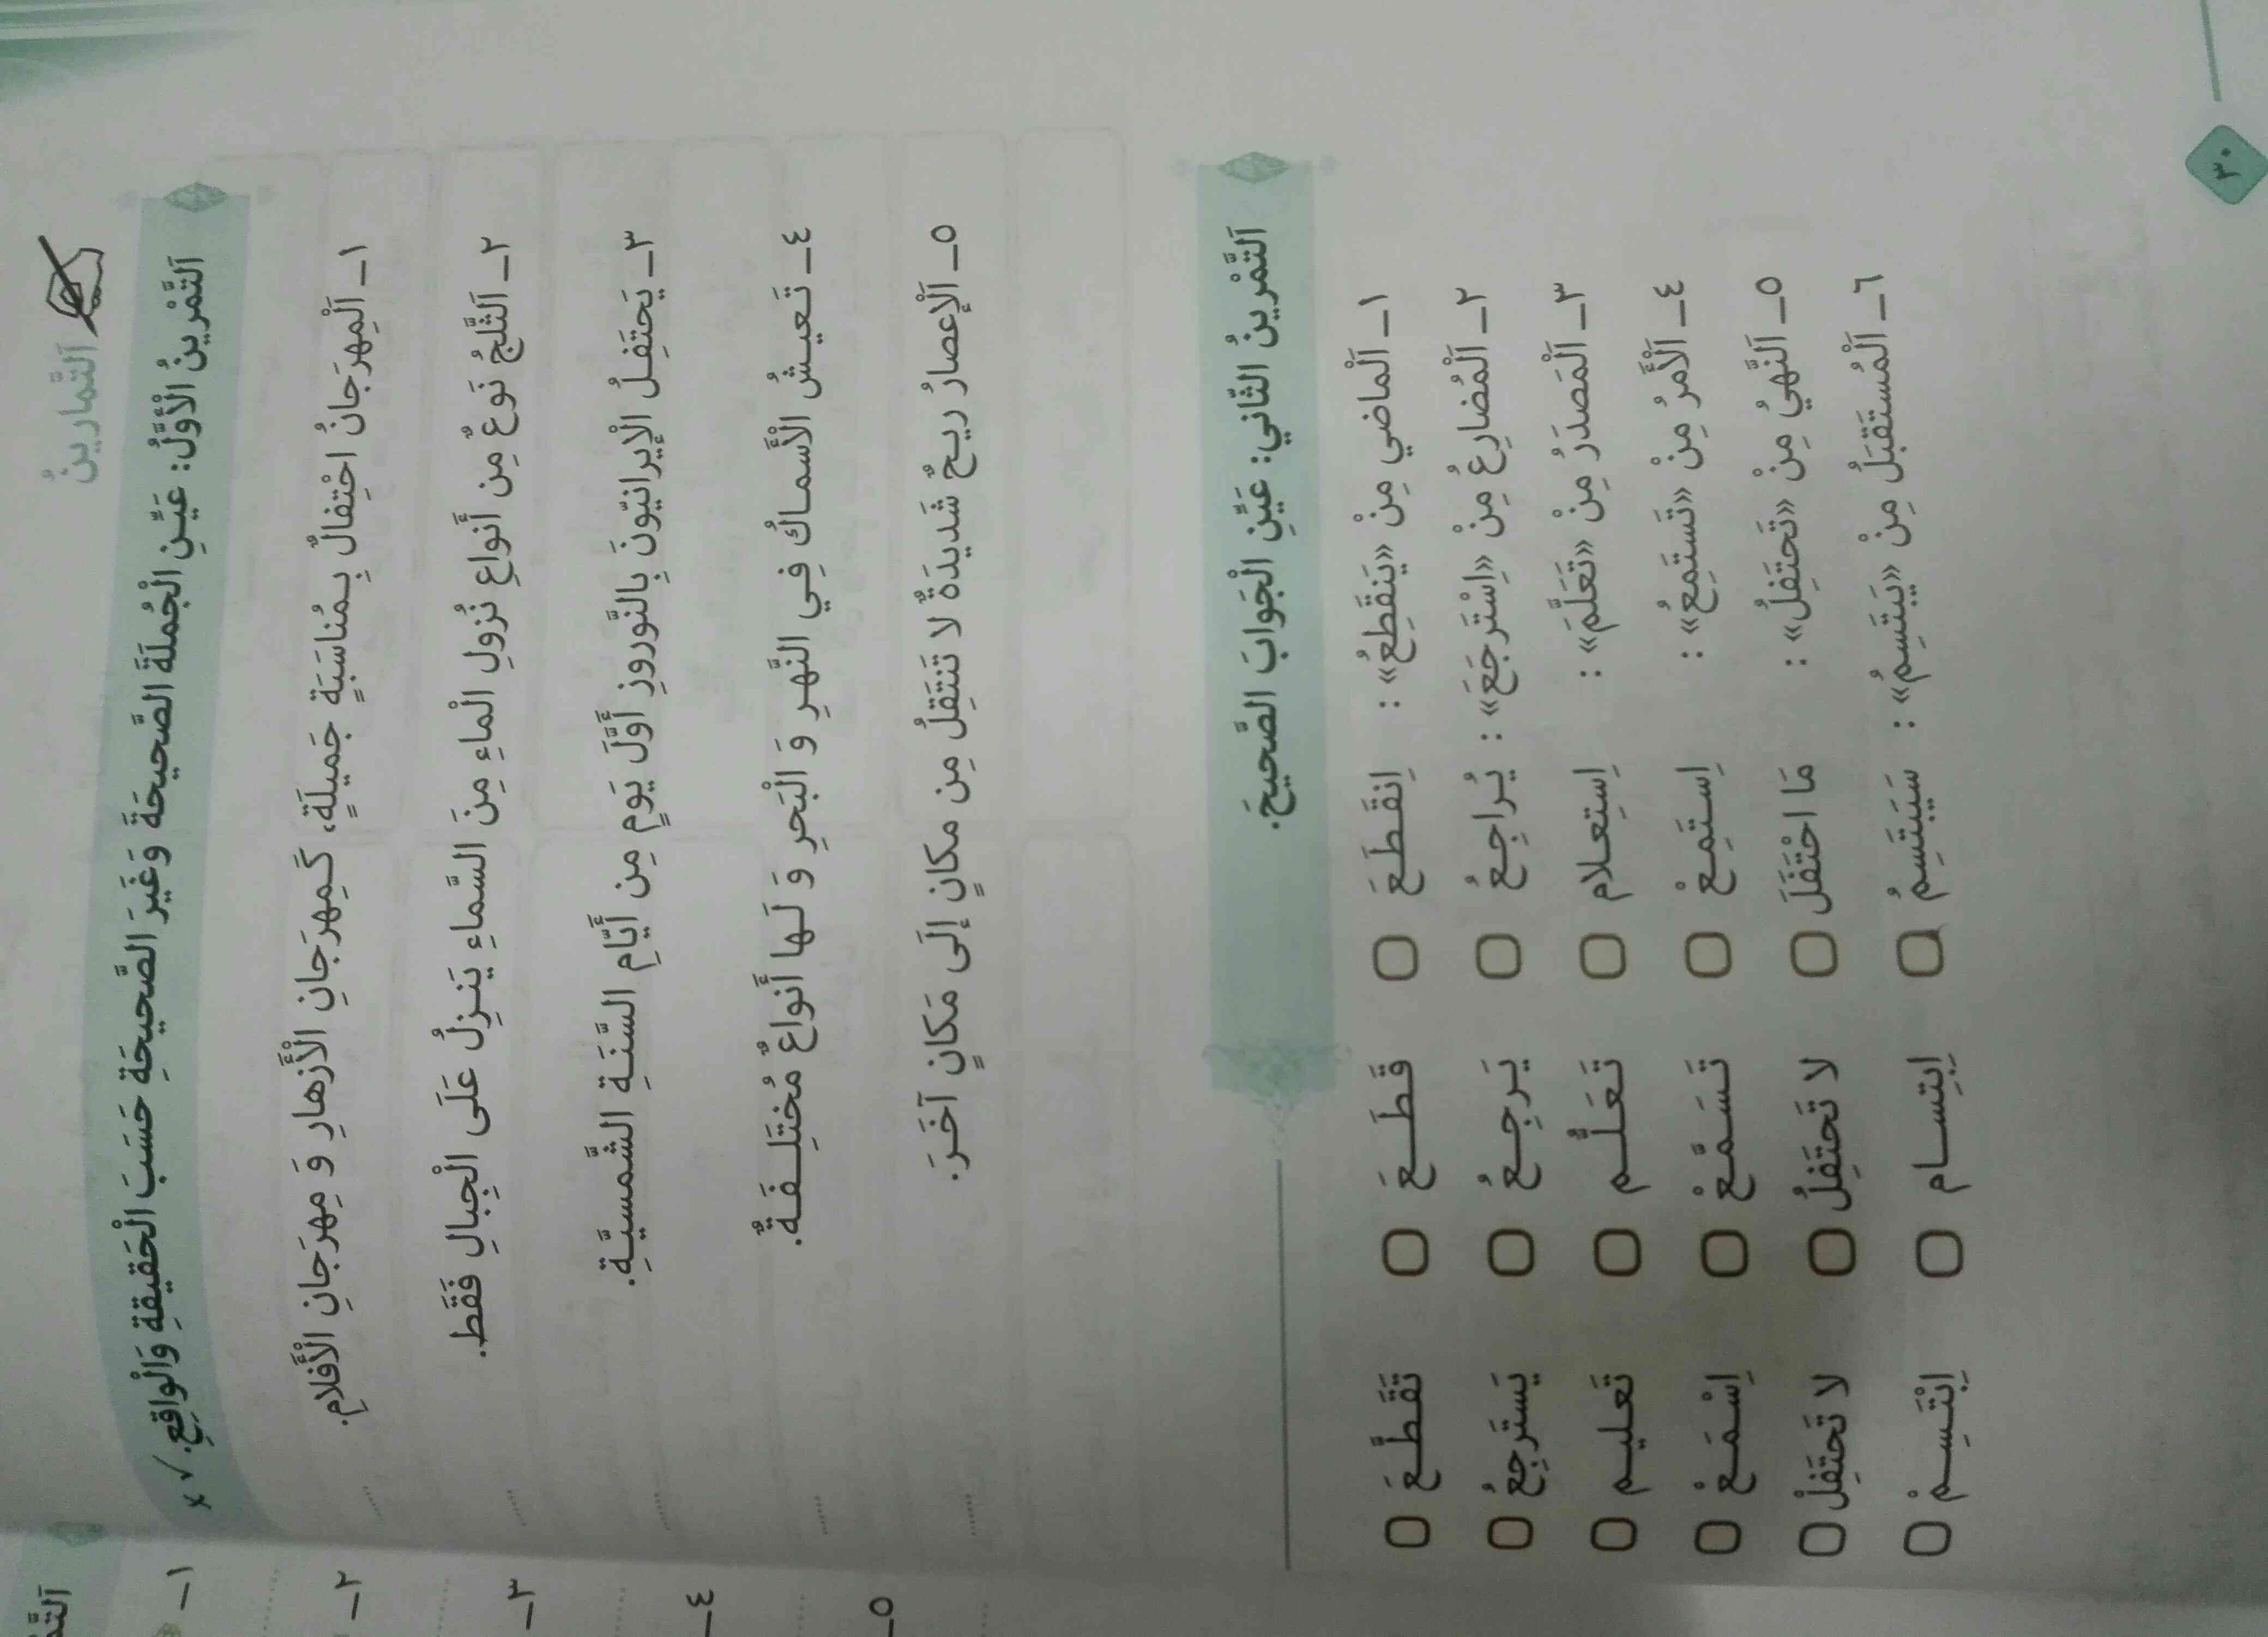 عربی درس 3 تمرین 1،2 ص30
لطفا جواباشو بفرستید 
ممنون